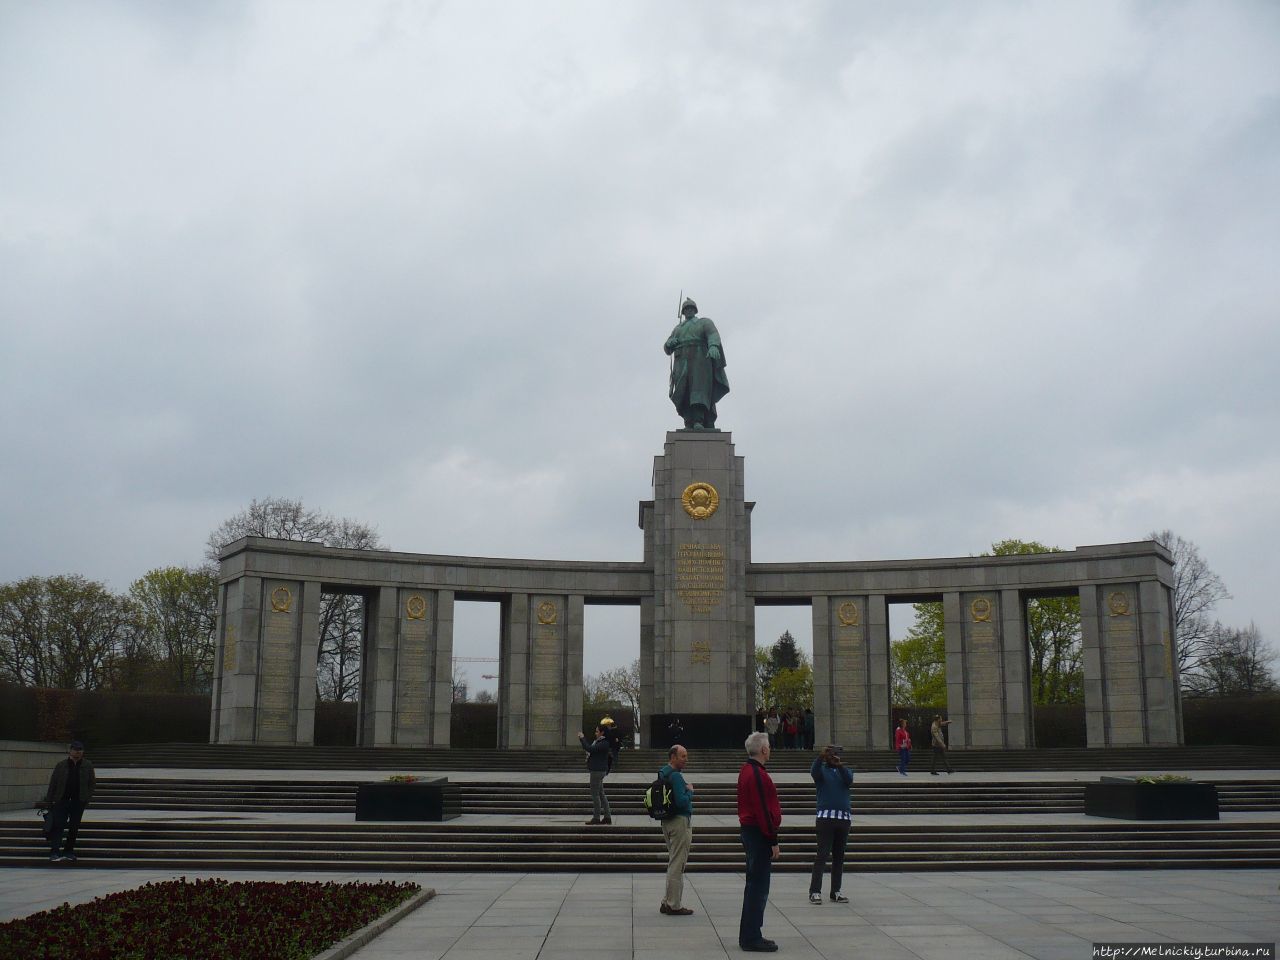 Мемориал павшим советским воинам в Тиргартене / Soviet War Memorial Tiergarten